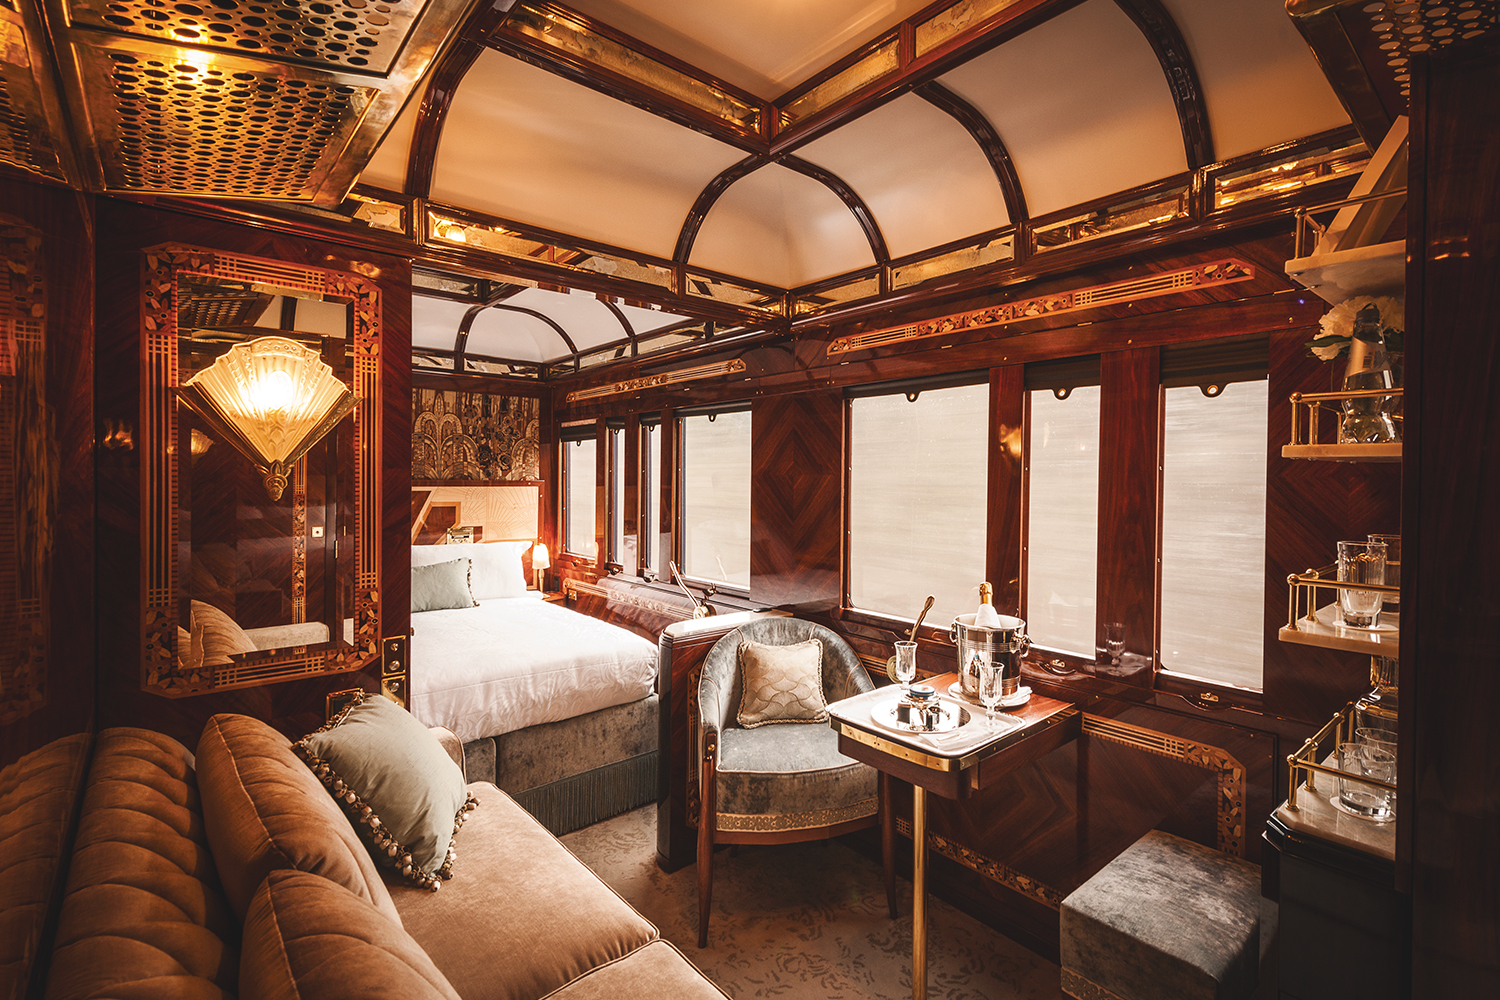 The Paris Grand Suite on the Venice Simplon-Orient-Express train